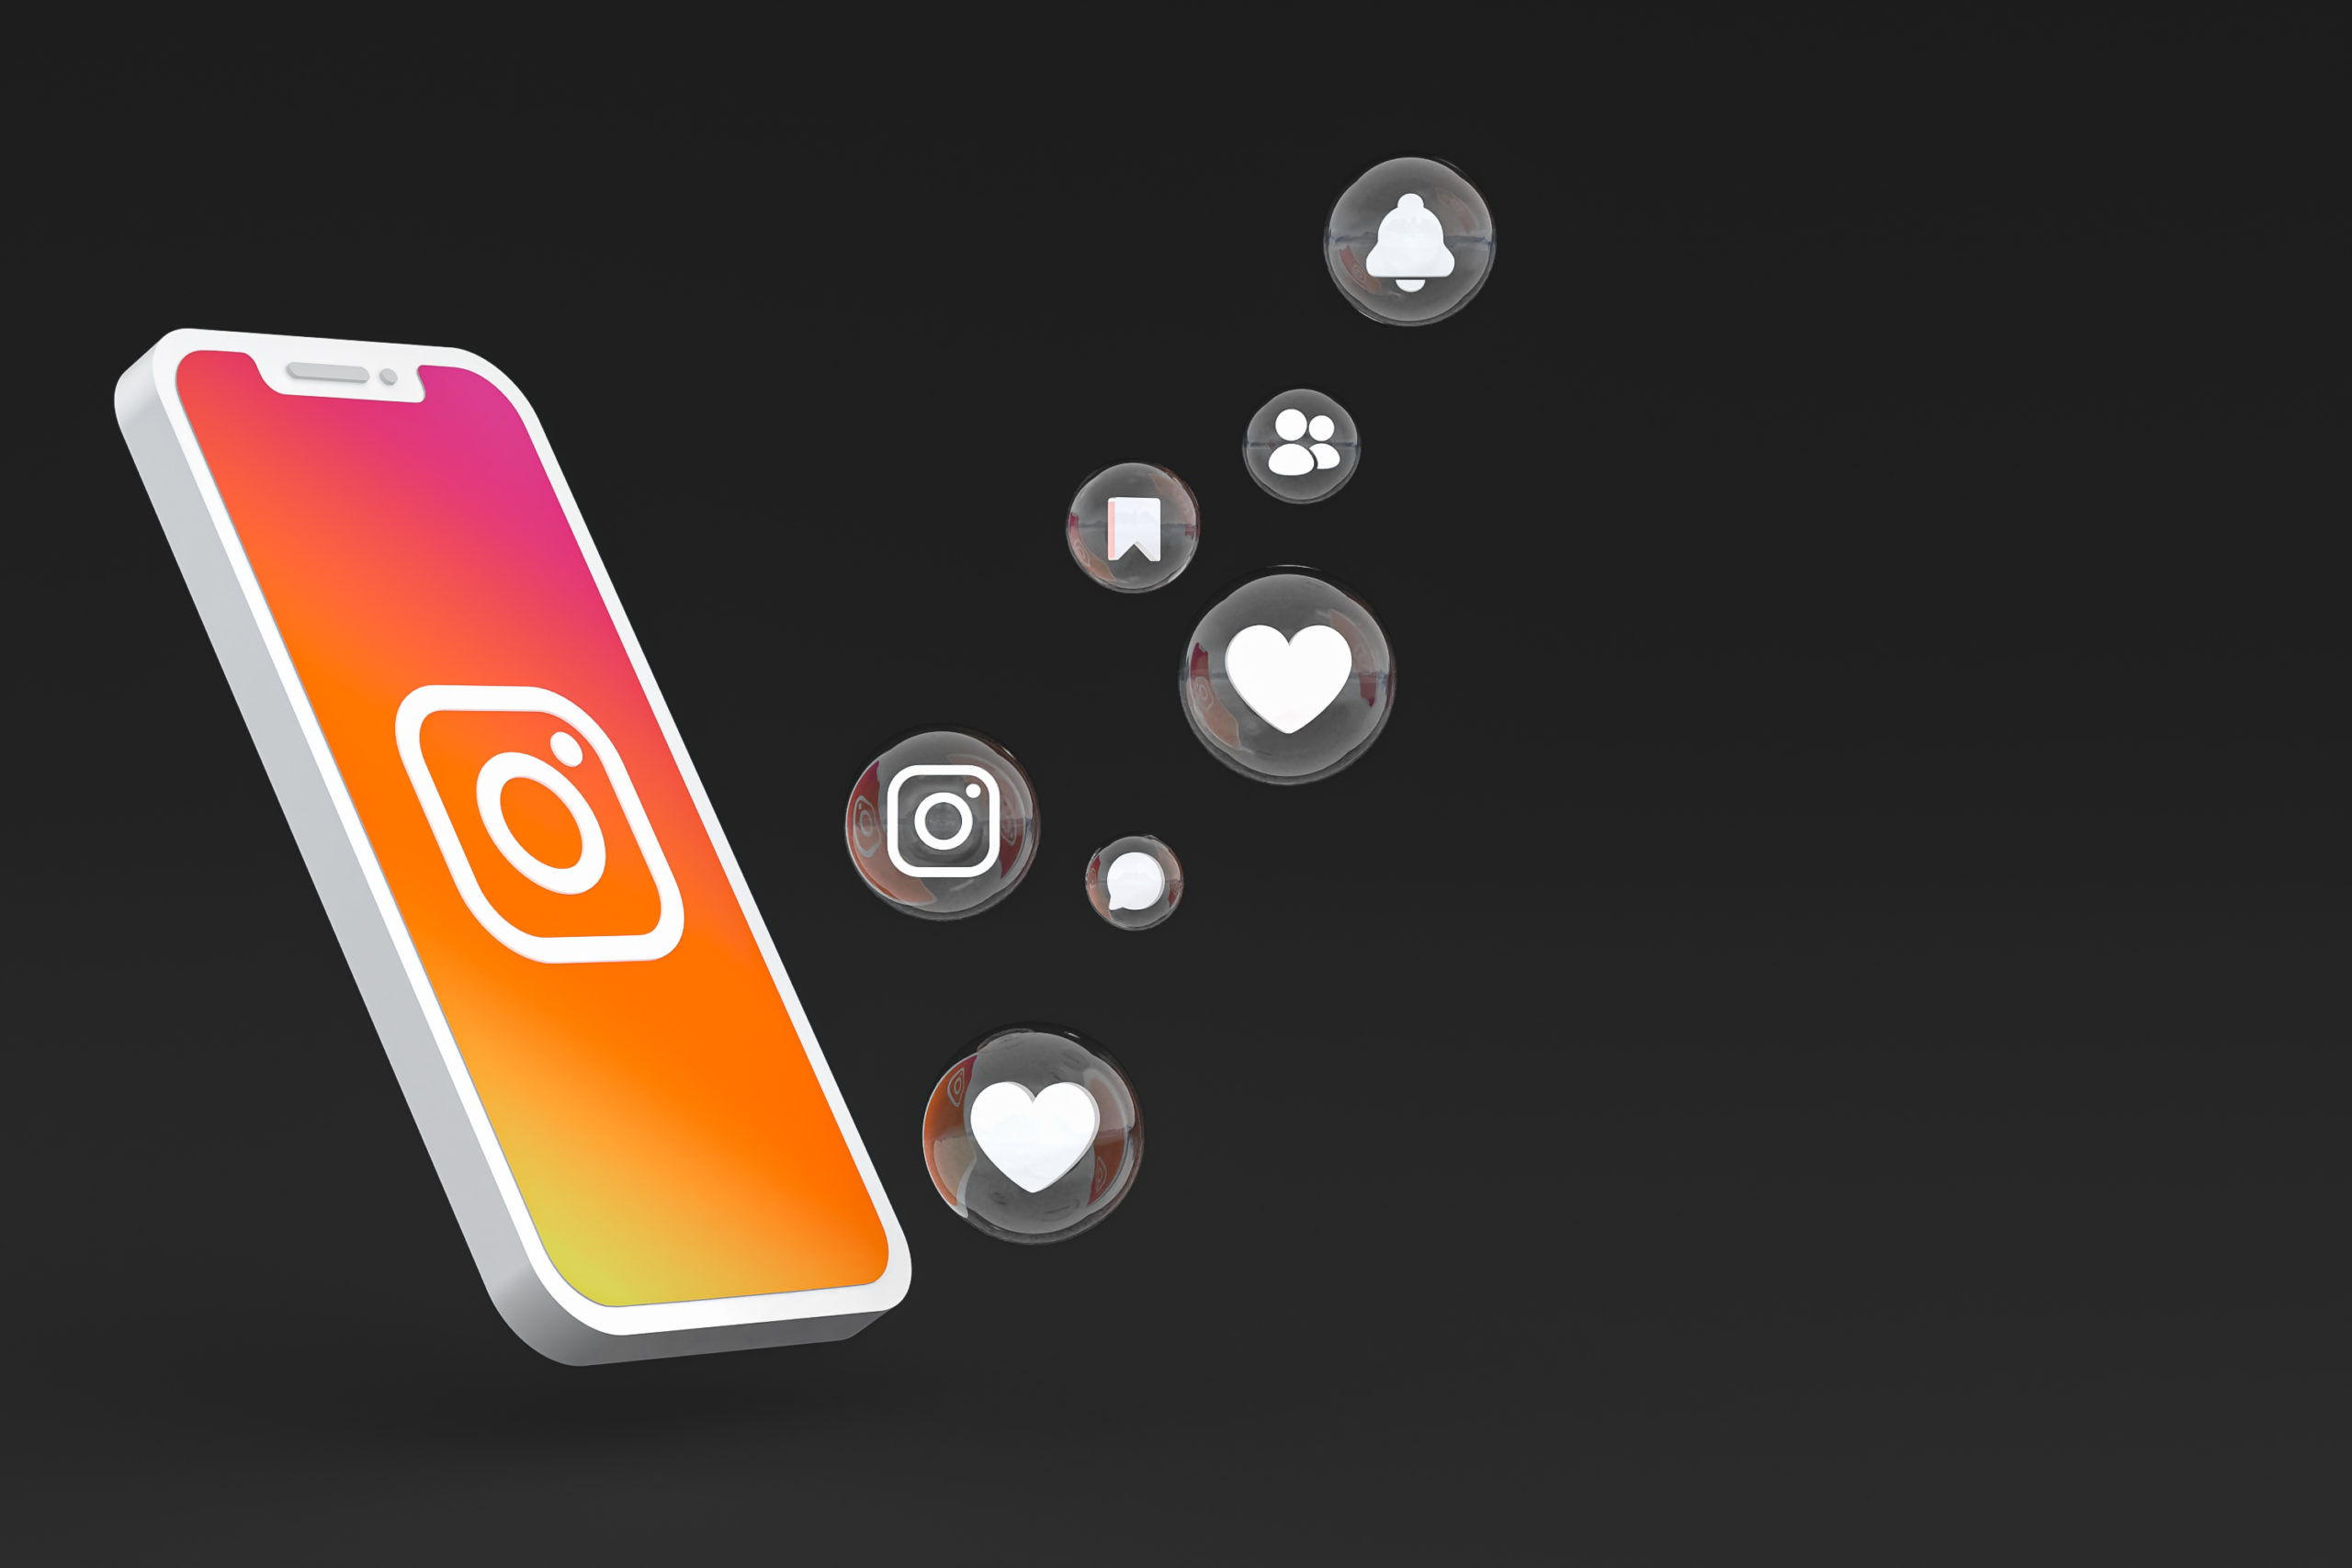 Top 6 Instagram Stories Marketing Tips